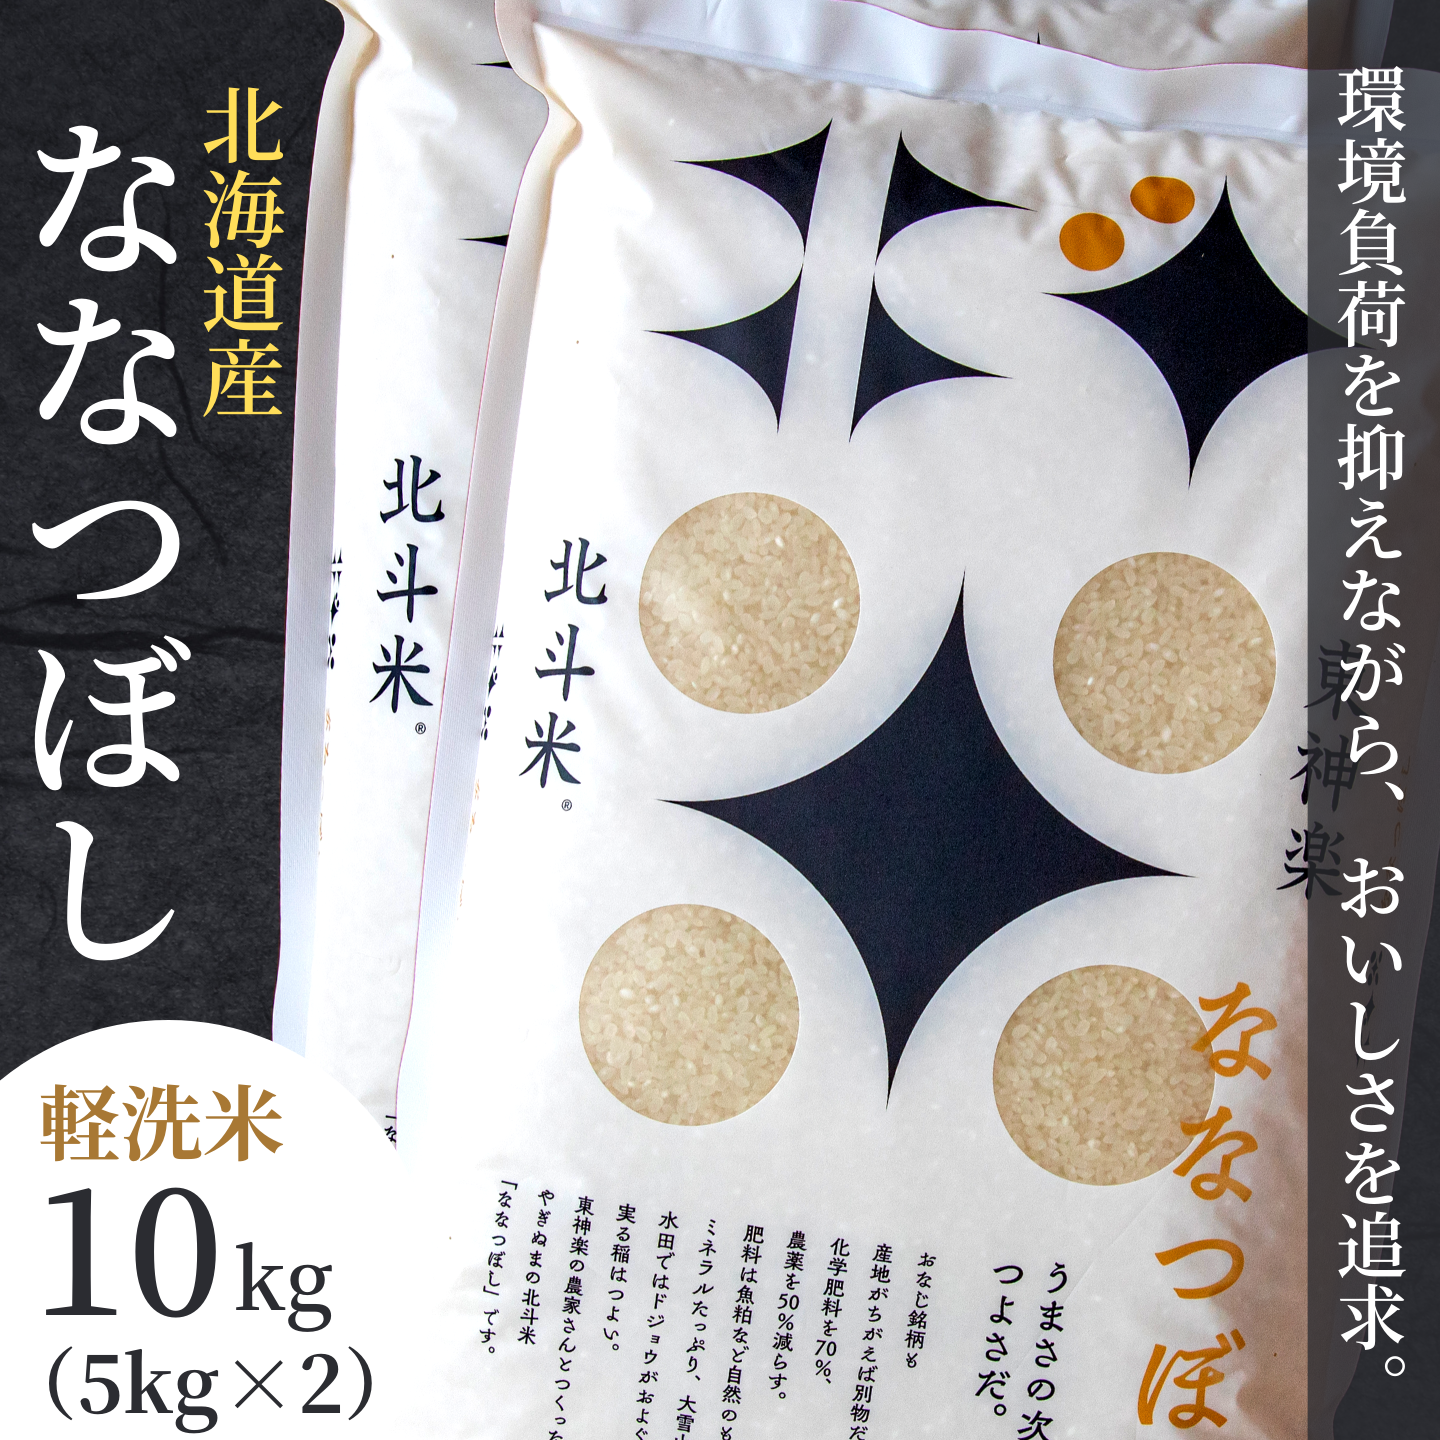 『定期便』[軽く洗うだけでOK]北海道産ななつぼし 10kg (5kg×2)全3回